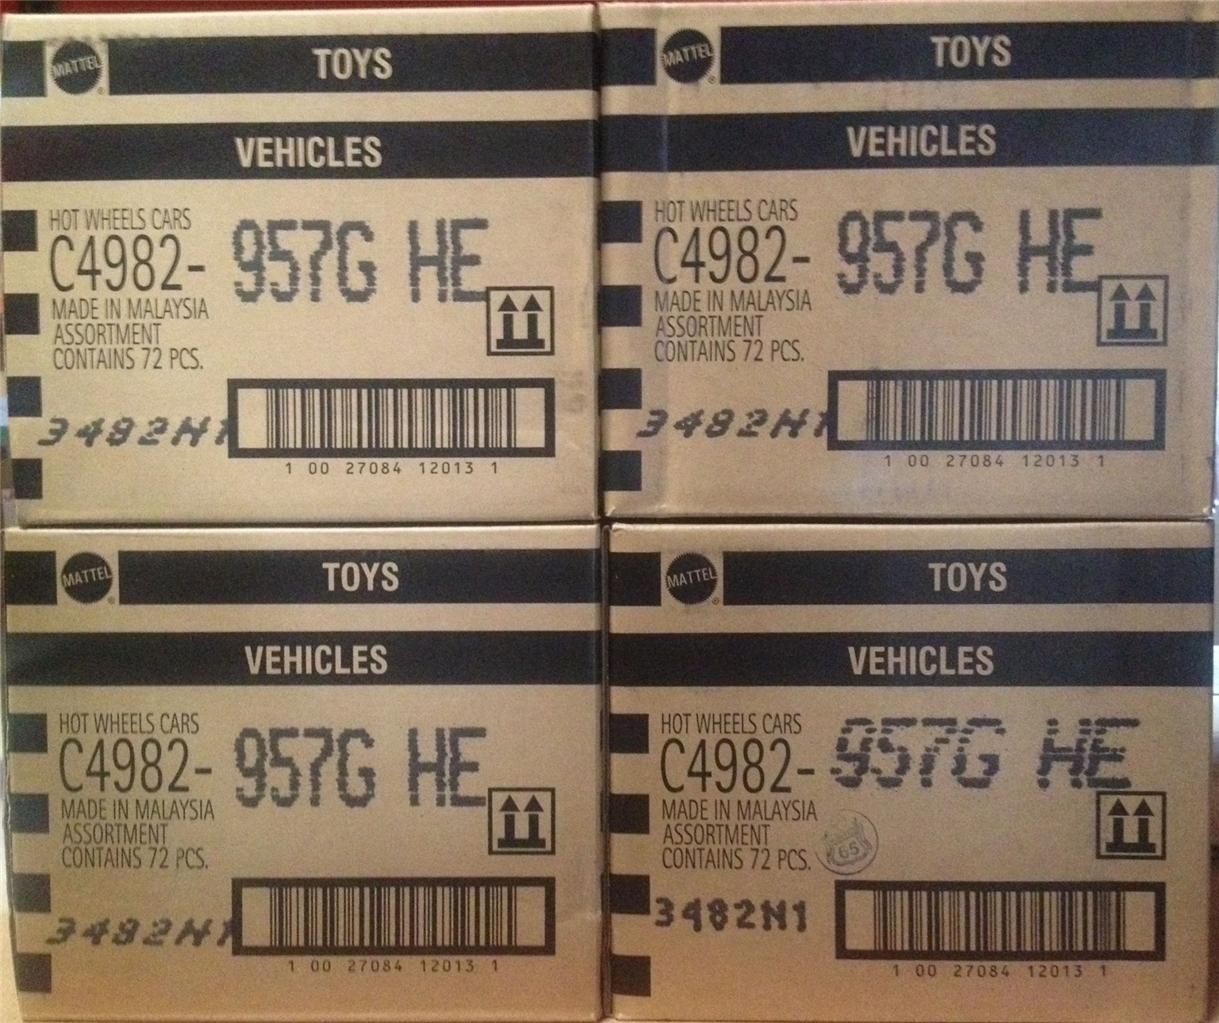 Hot Wheels 2013 Factory SEALED G Case C4982 957G Worldwide Basic 72